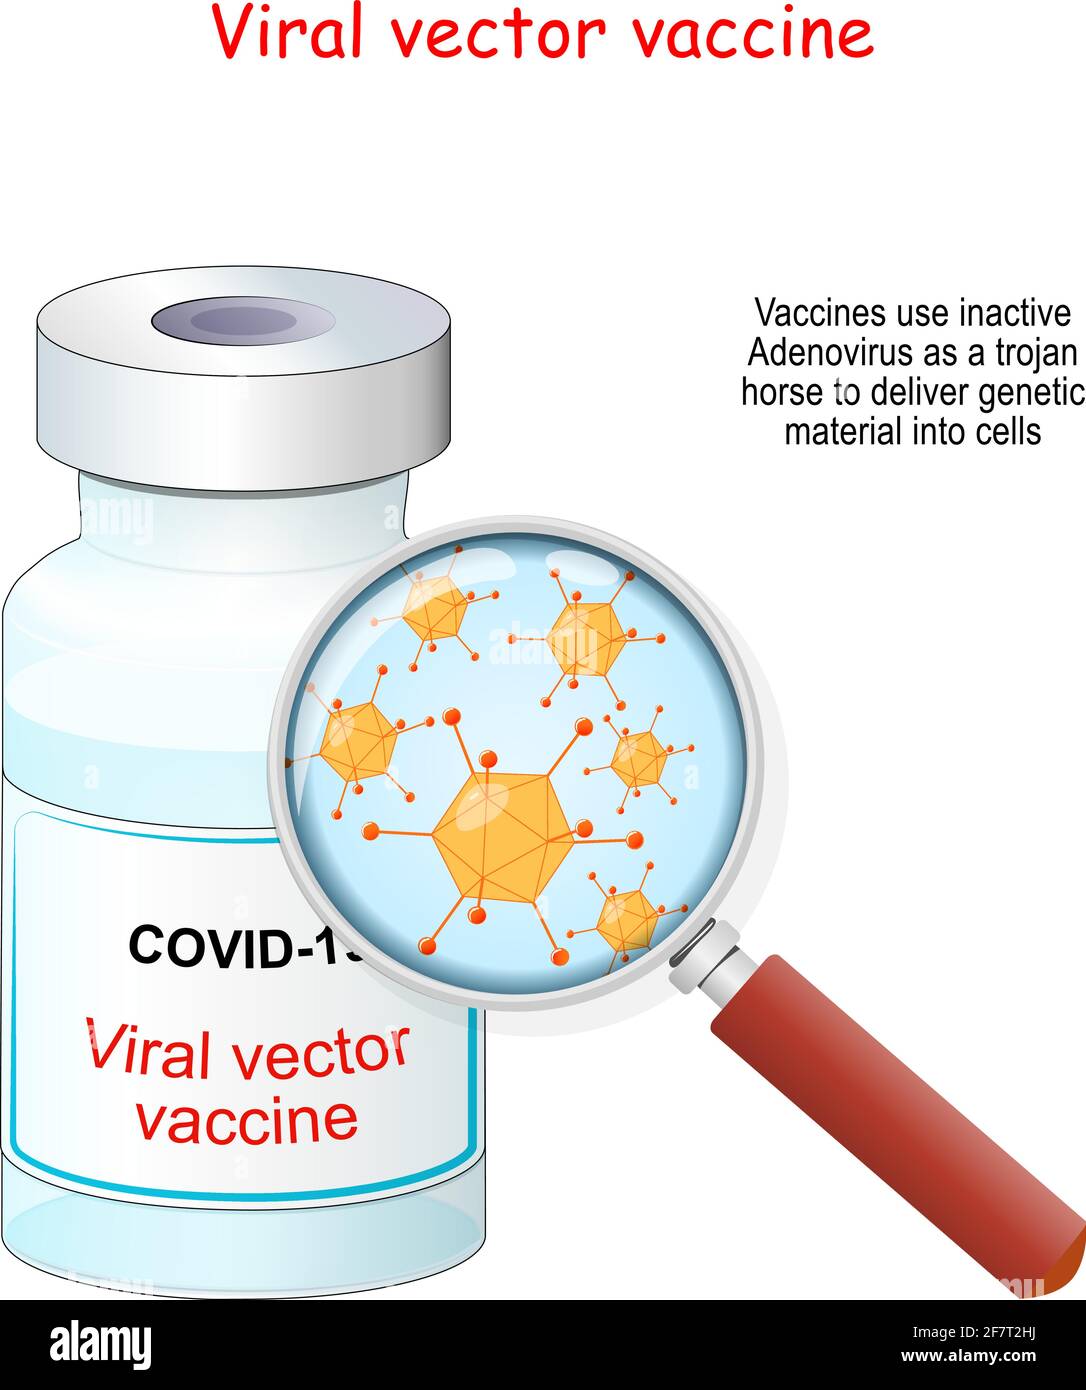 Coronavirus Covid-19. Vaccin à vecteur viral. Flacon de vaccin et loupe avec grossissement des Adenovirus utilisés pour la transmission du matériel génétique Illustration de Vecteur